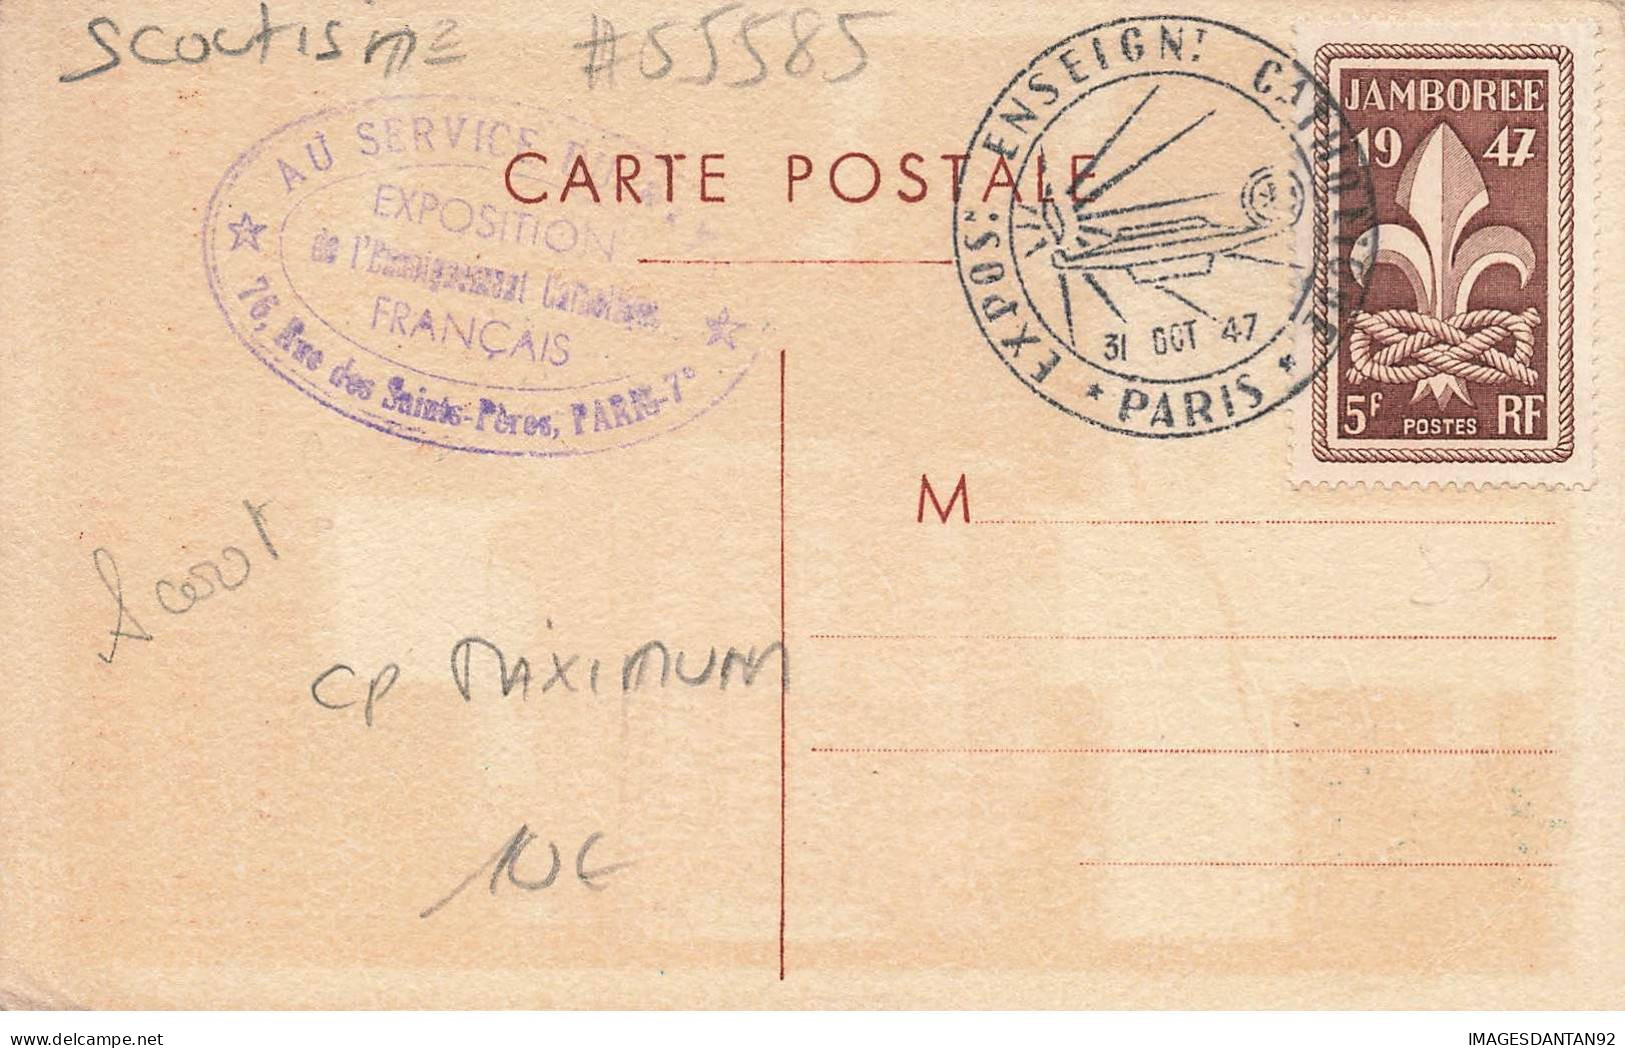 SCOUTISME #FG55585 CARTE MAXIMUM EXPOSITION 1947 CATHOLIQUE FRANCAIS SCOUT PARIS JAMBOREE - Scouting